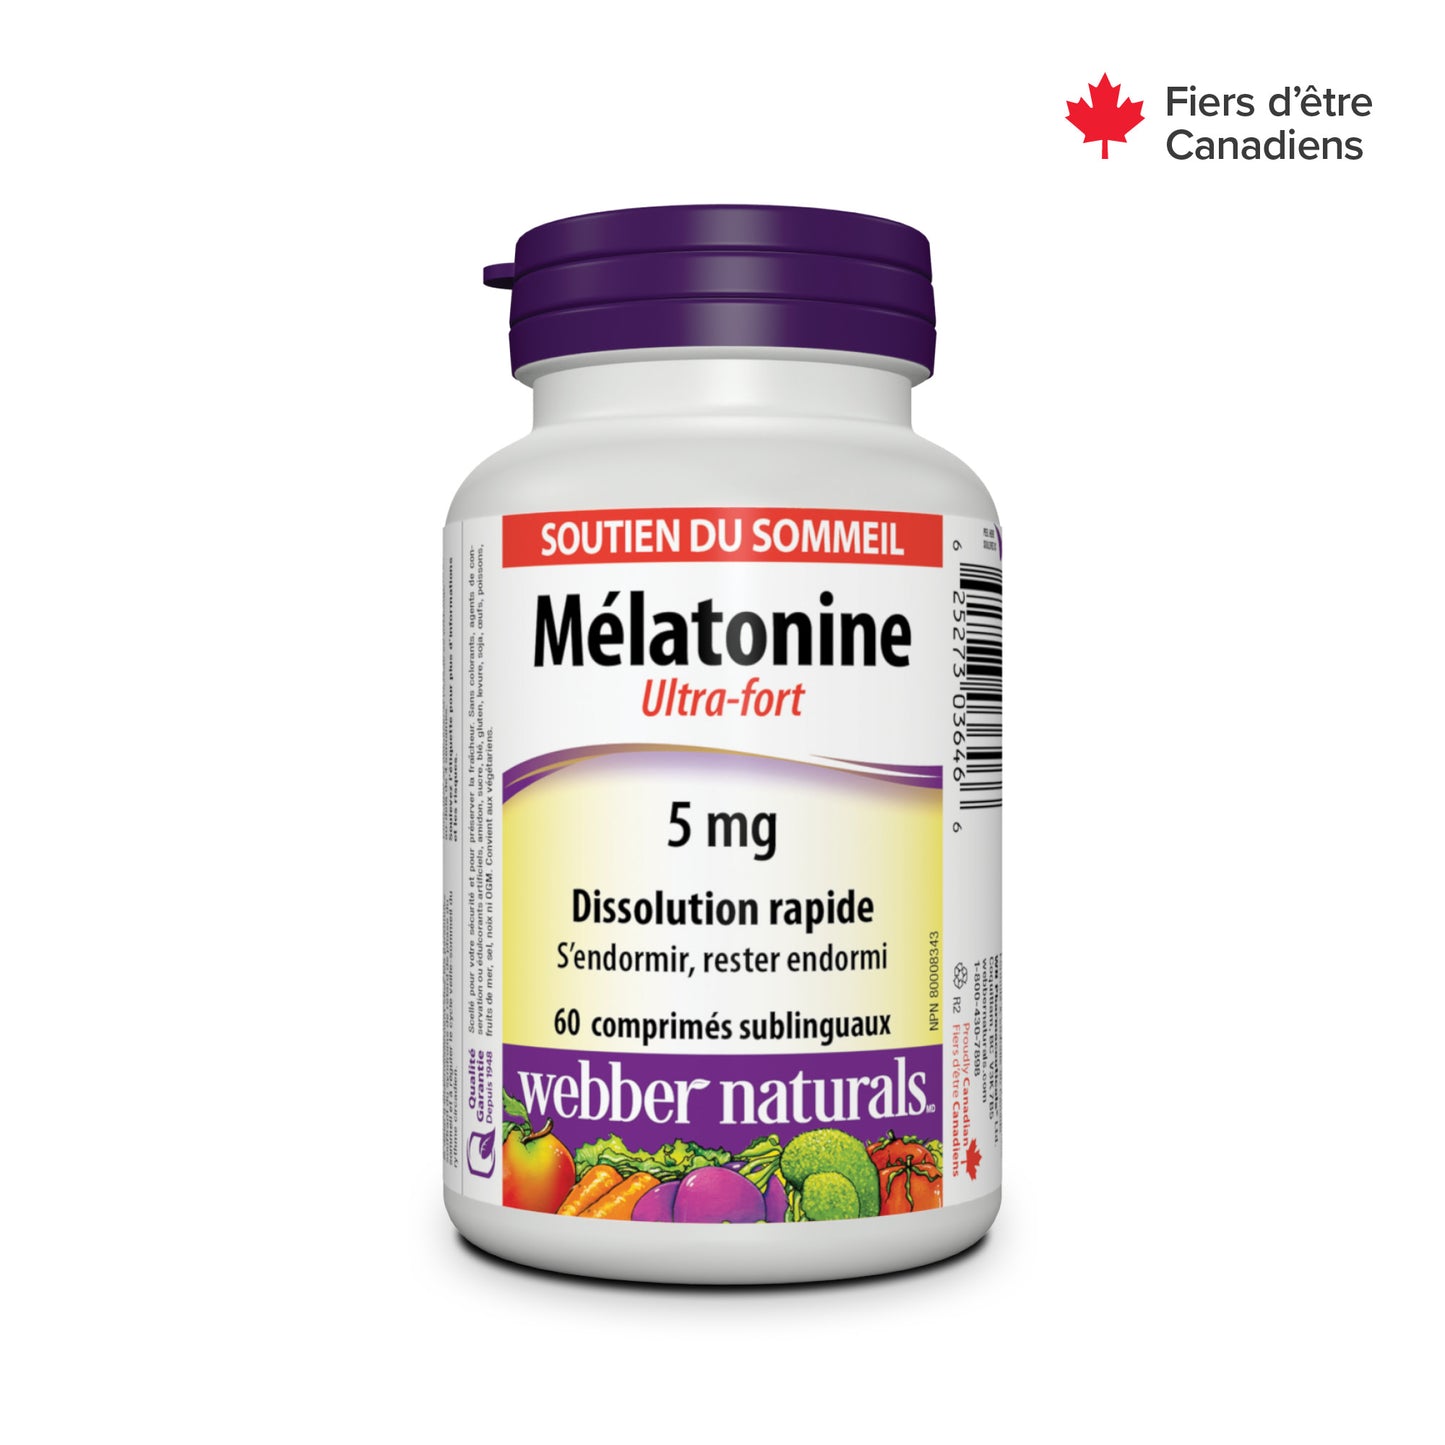 Mélatonine Ultra-fort Dissolution rapide 5 mg for Webber Naturals|v|hi-res|WN3646